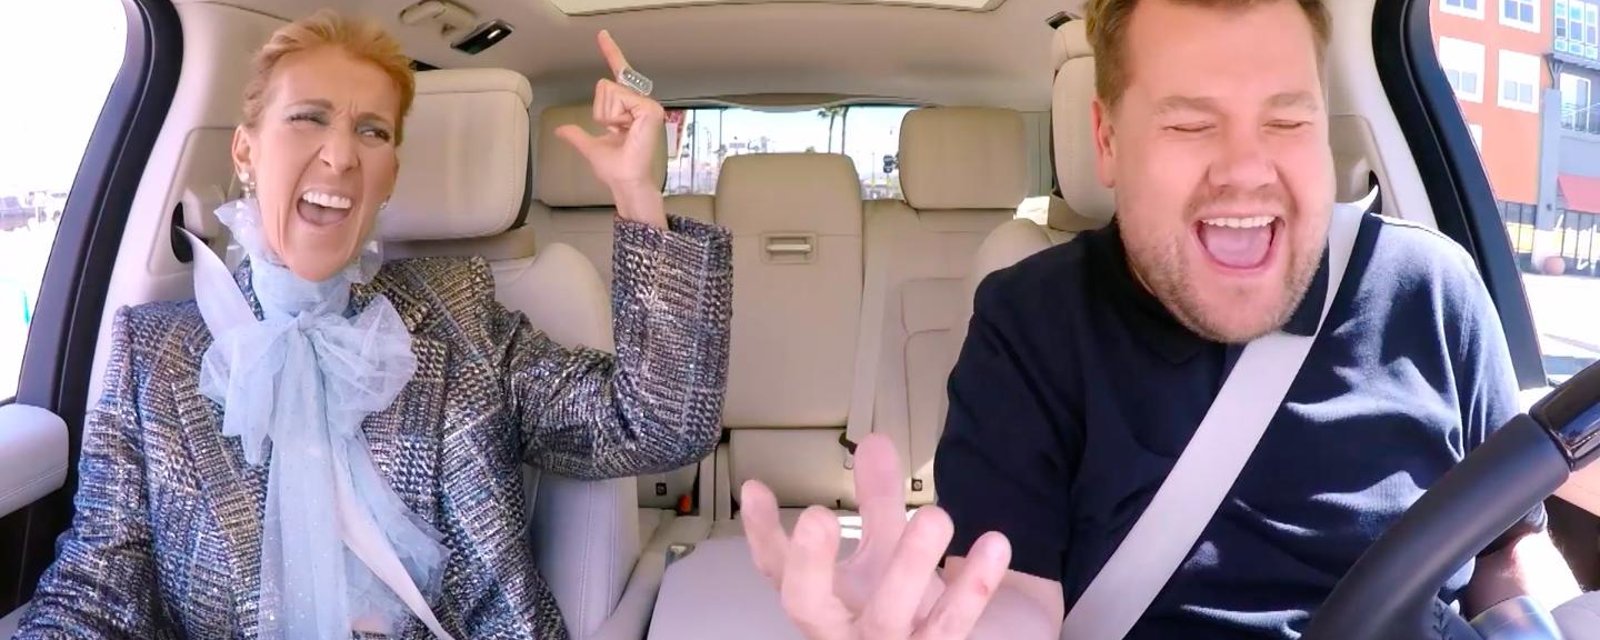 À VOIR: Céline Dion participe finalement au fameux Carpool Karaoke et voici la vidéo complète